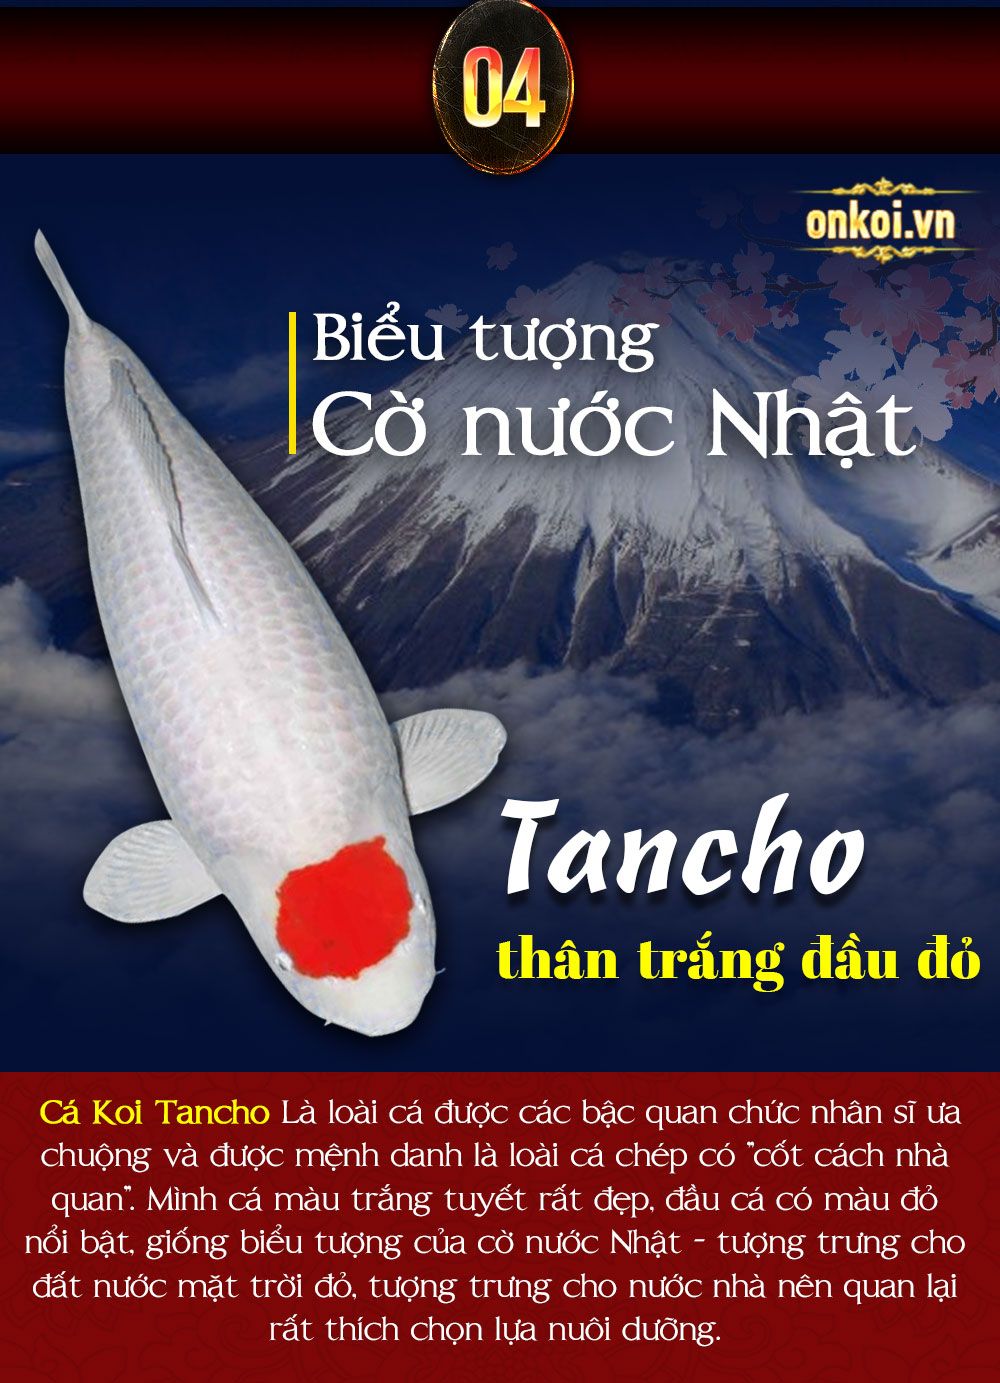 Cá koi nhật bản Onkoi Quang Minh